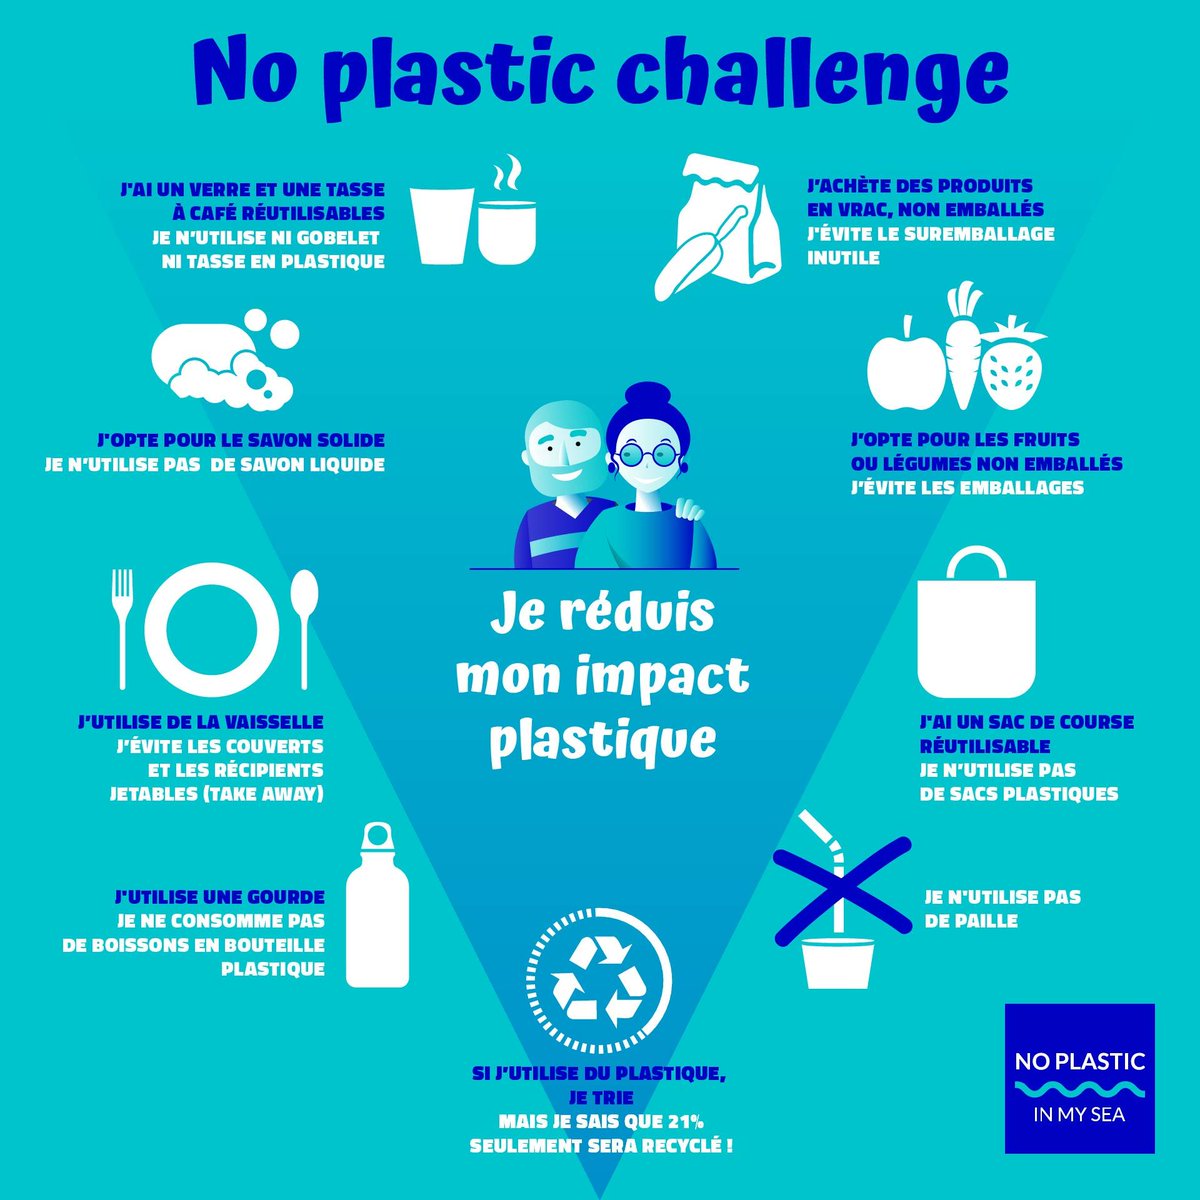 #NoPlasticChallenge, voici les éco-gestes pour réduire sa consommation de plastique @Maires_Ruraux @MAIRES78 @FFVoile @Min_Ecologie @brunepoirson @cmonbio1 @LaCitrouilleFR